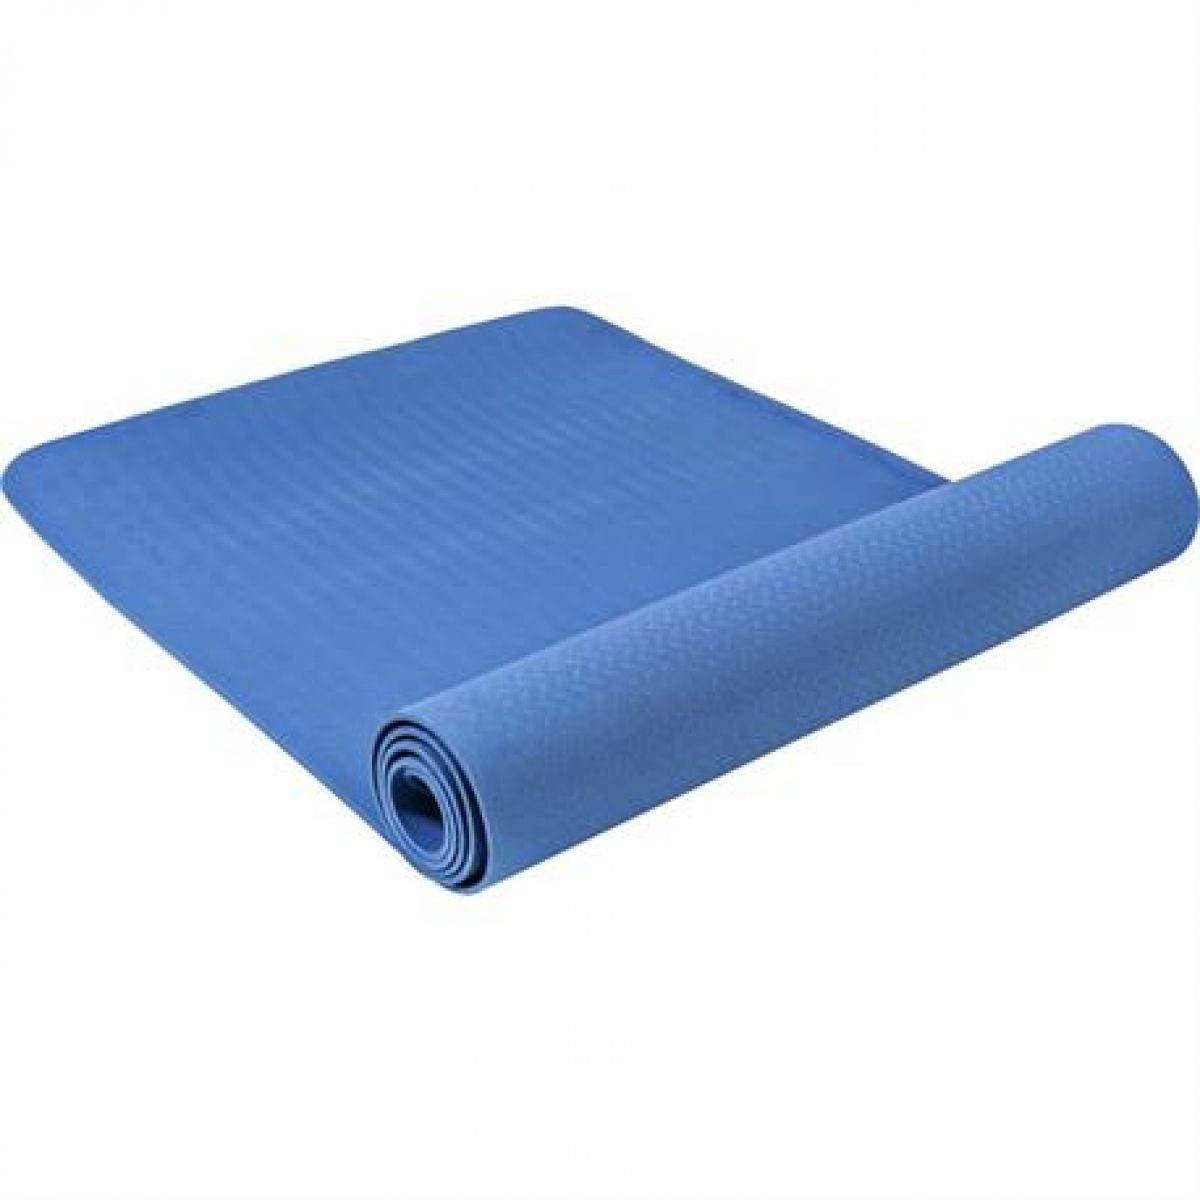 Yogamat Blauw Extra Dun (4 mm)